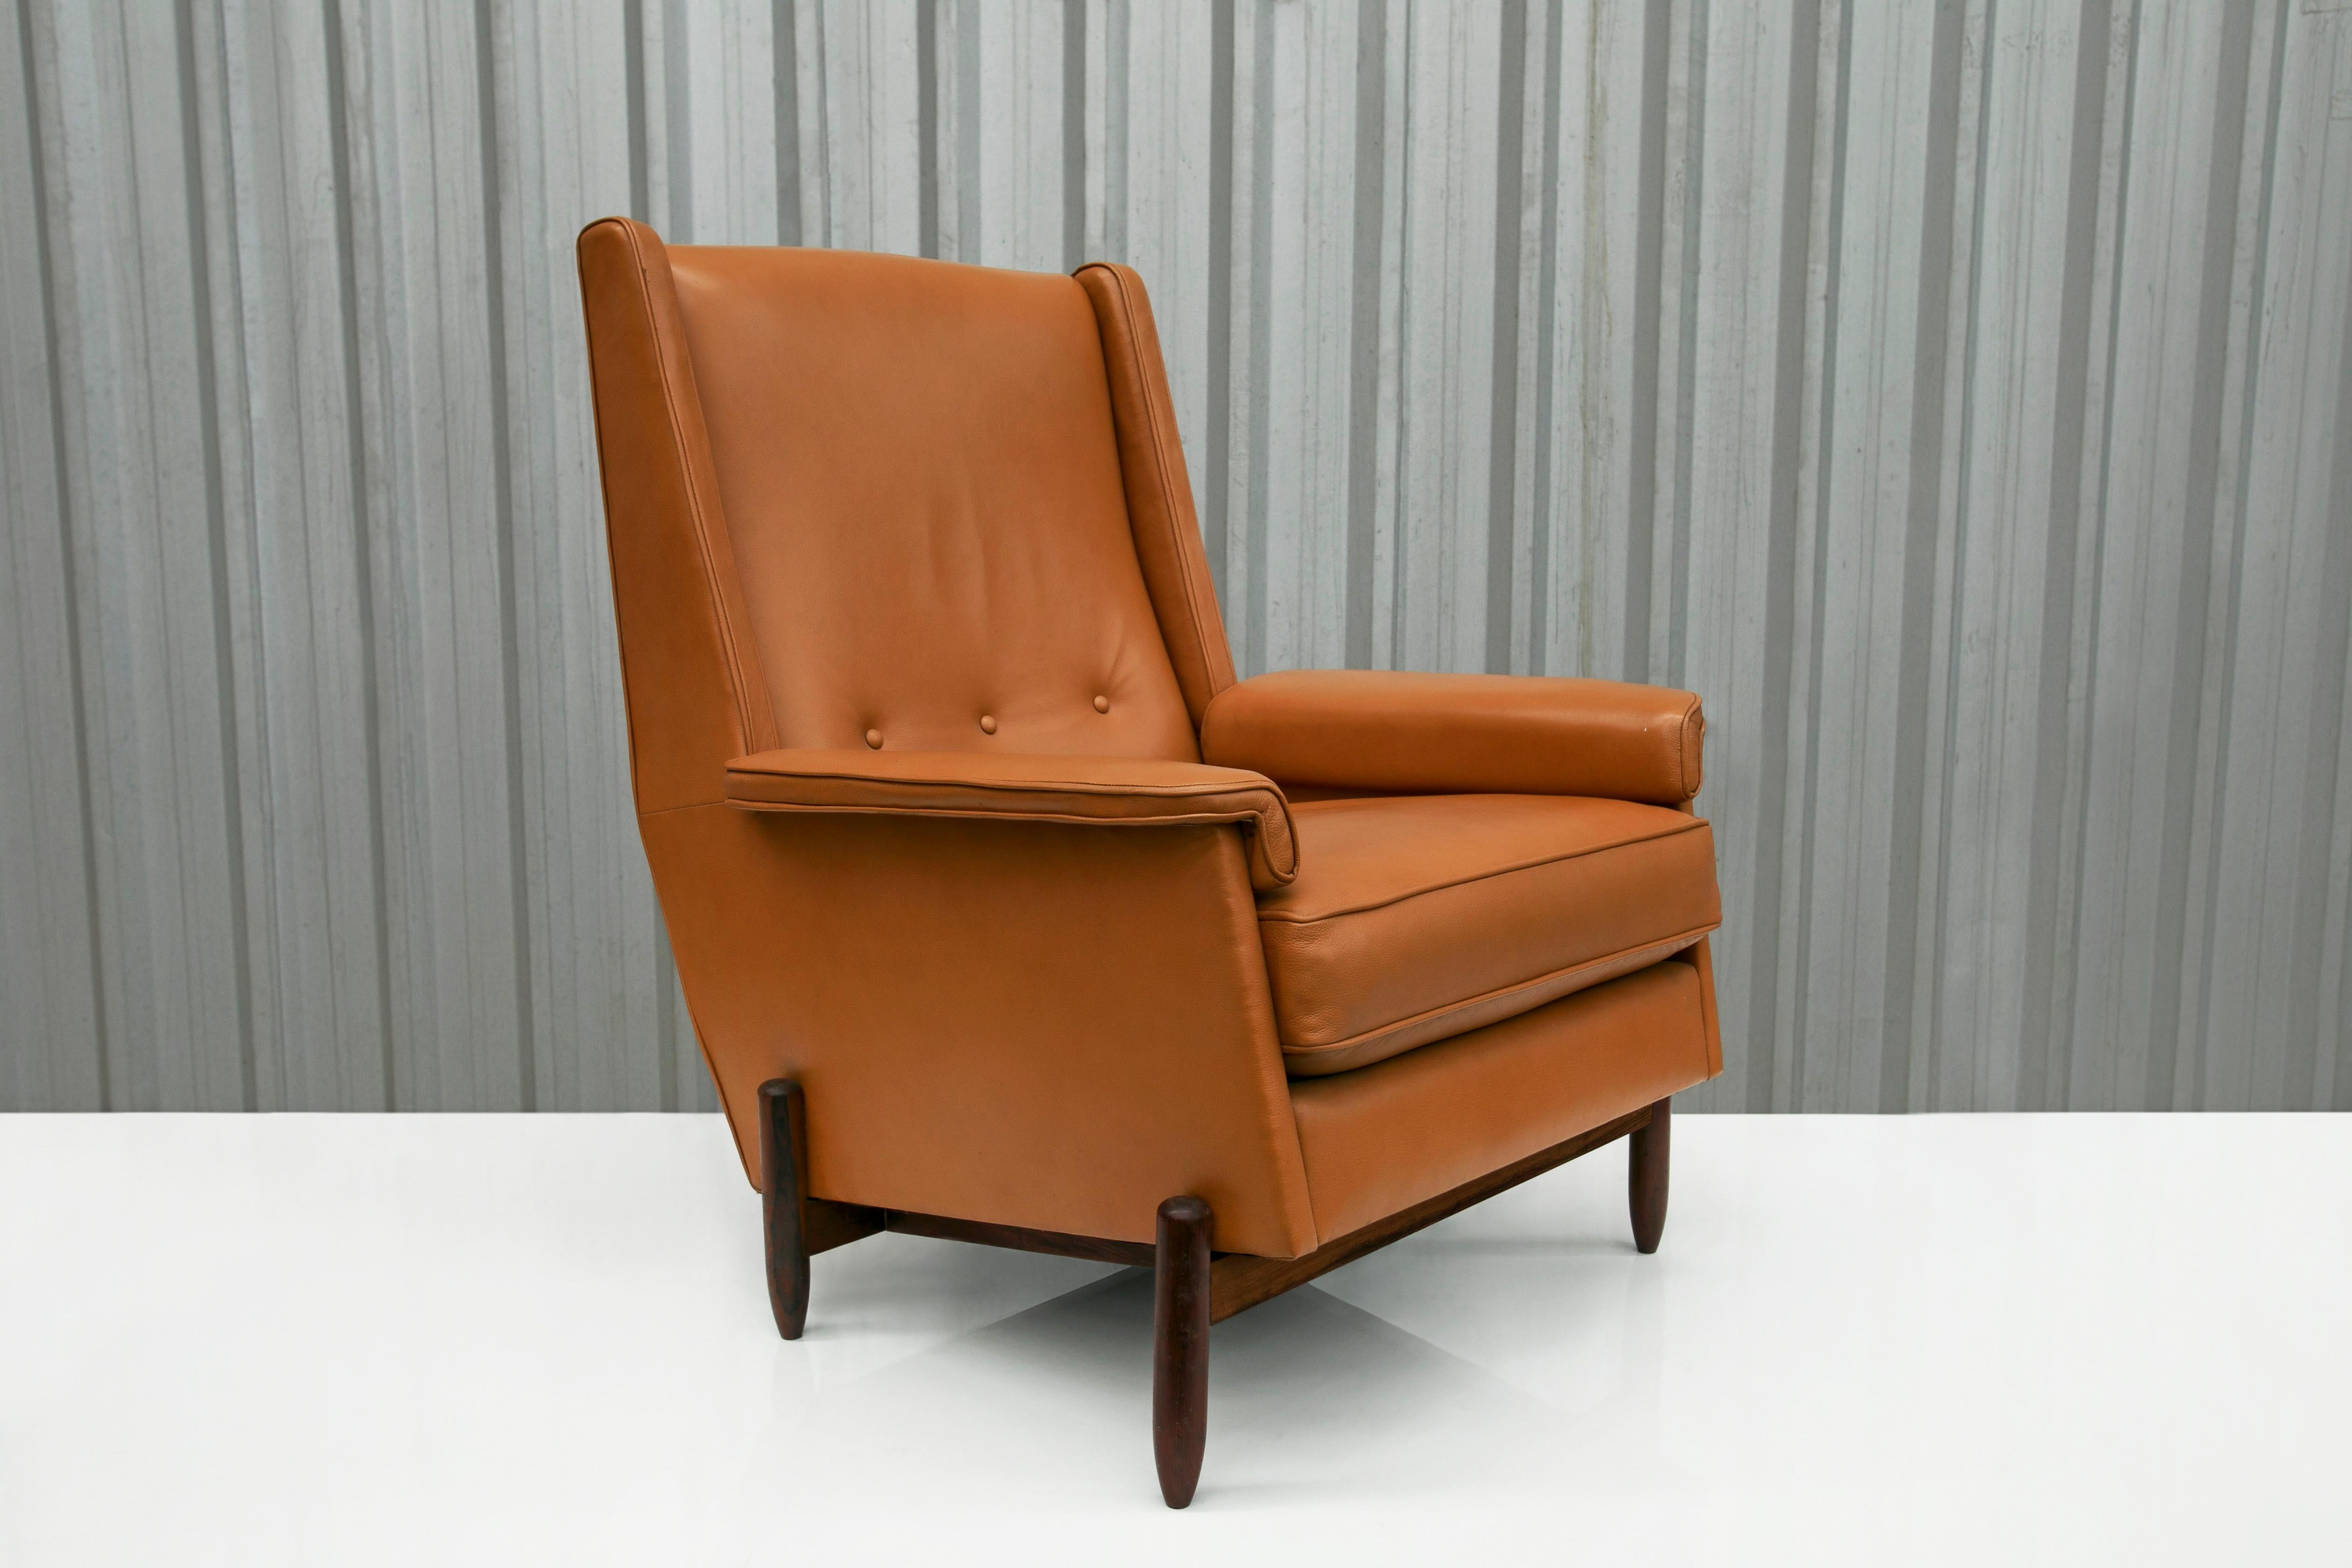 Dieser spektakuläre, moderne brasilianische Clubsessel, der in den sechziger Jahren von Jorge Jabour entworfen wurde, ist heute erhältlich! Die Beine und der Korpus dieses Stuhls sind aus Hartholz gefertigt und die Sitze sind mit orangefarbenem